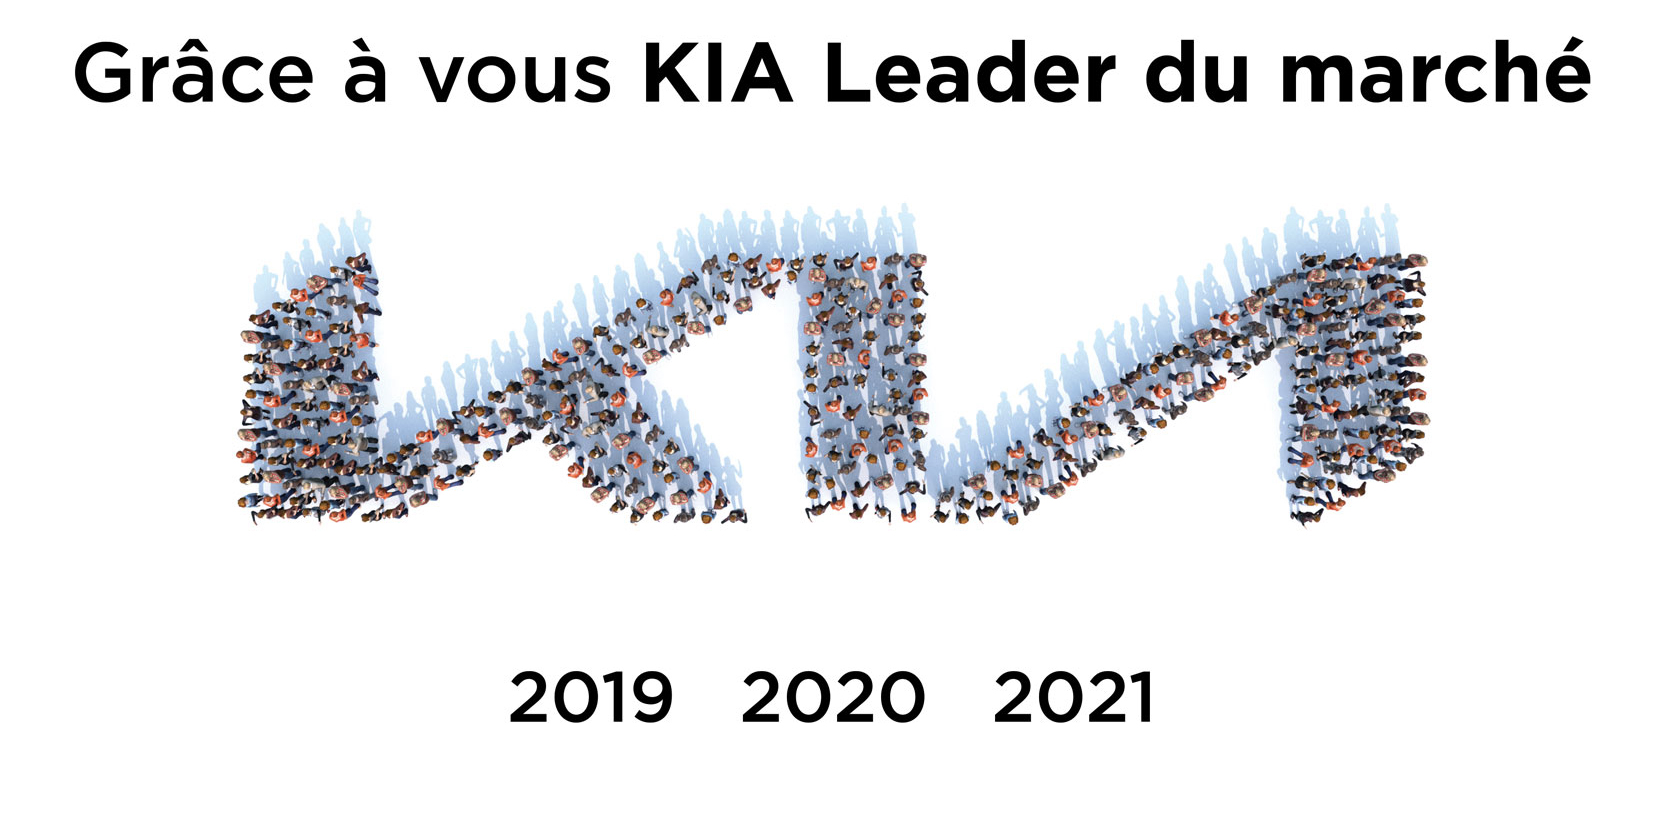 KIA leader du marché en 2021